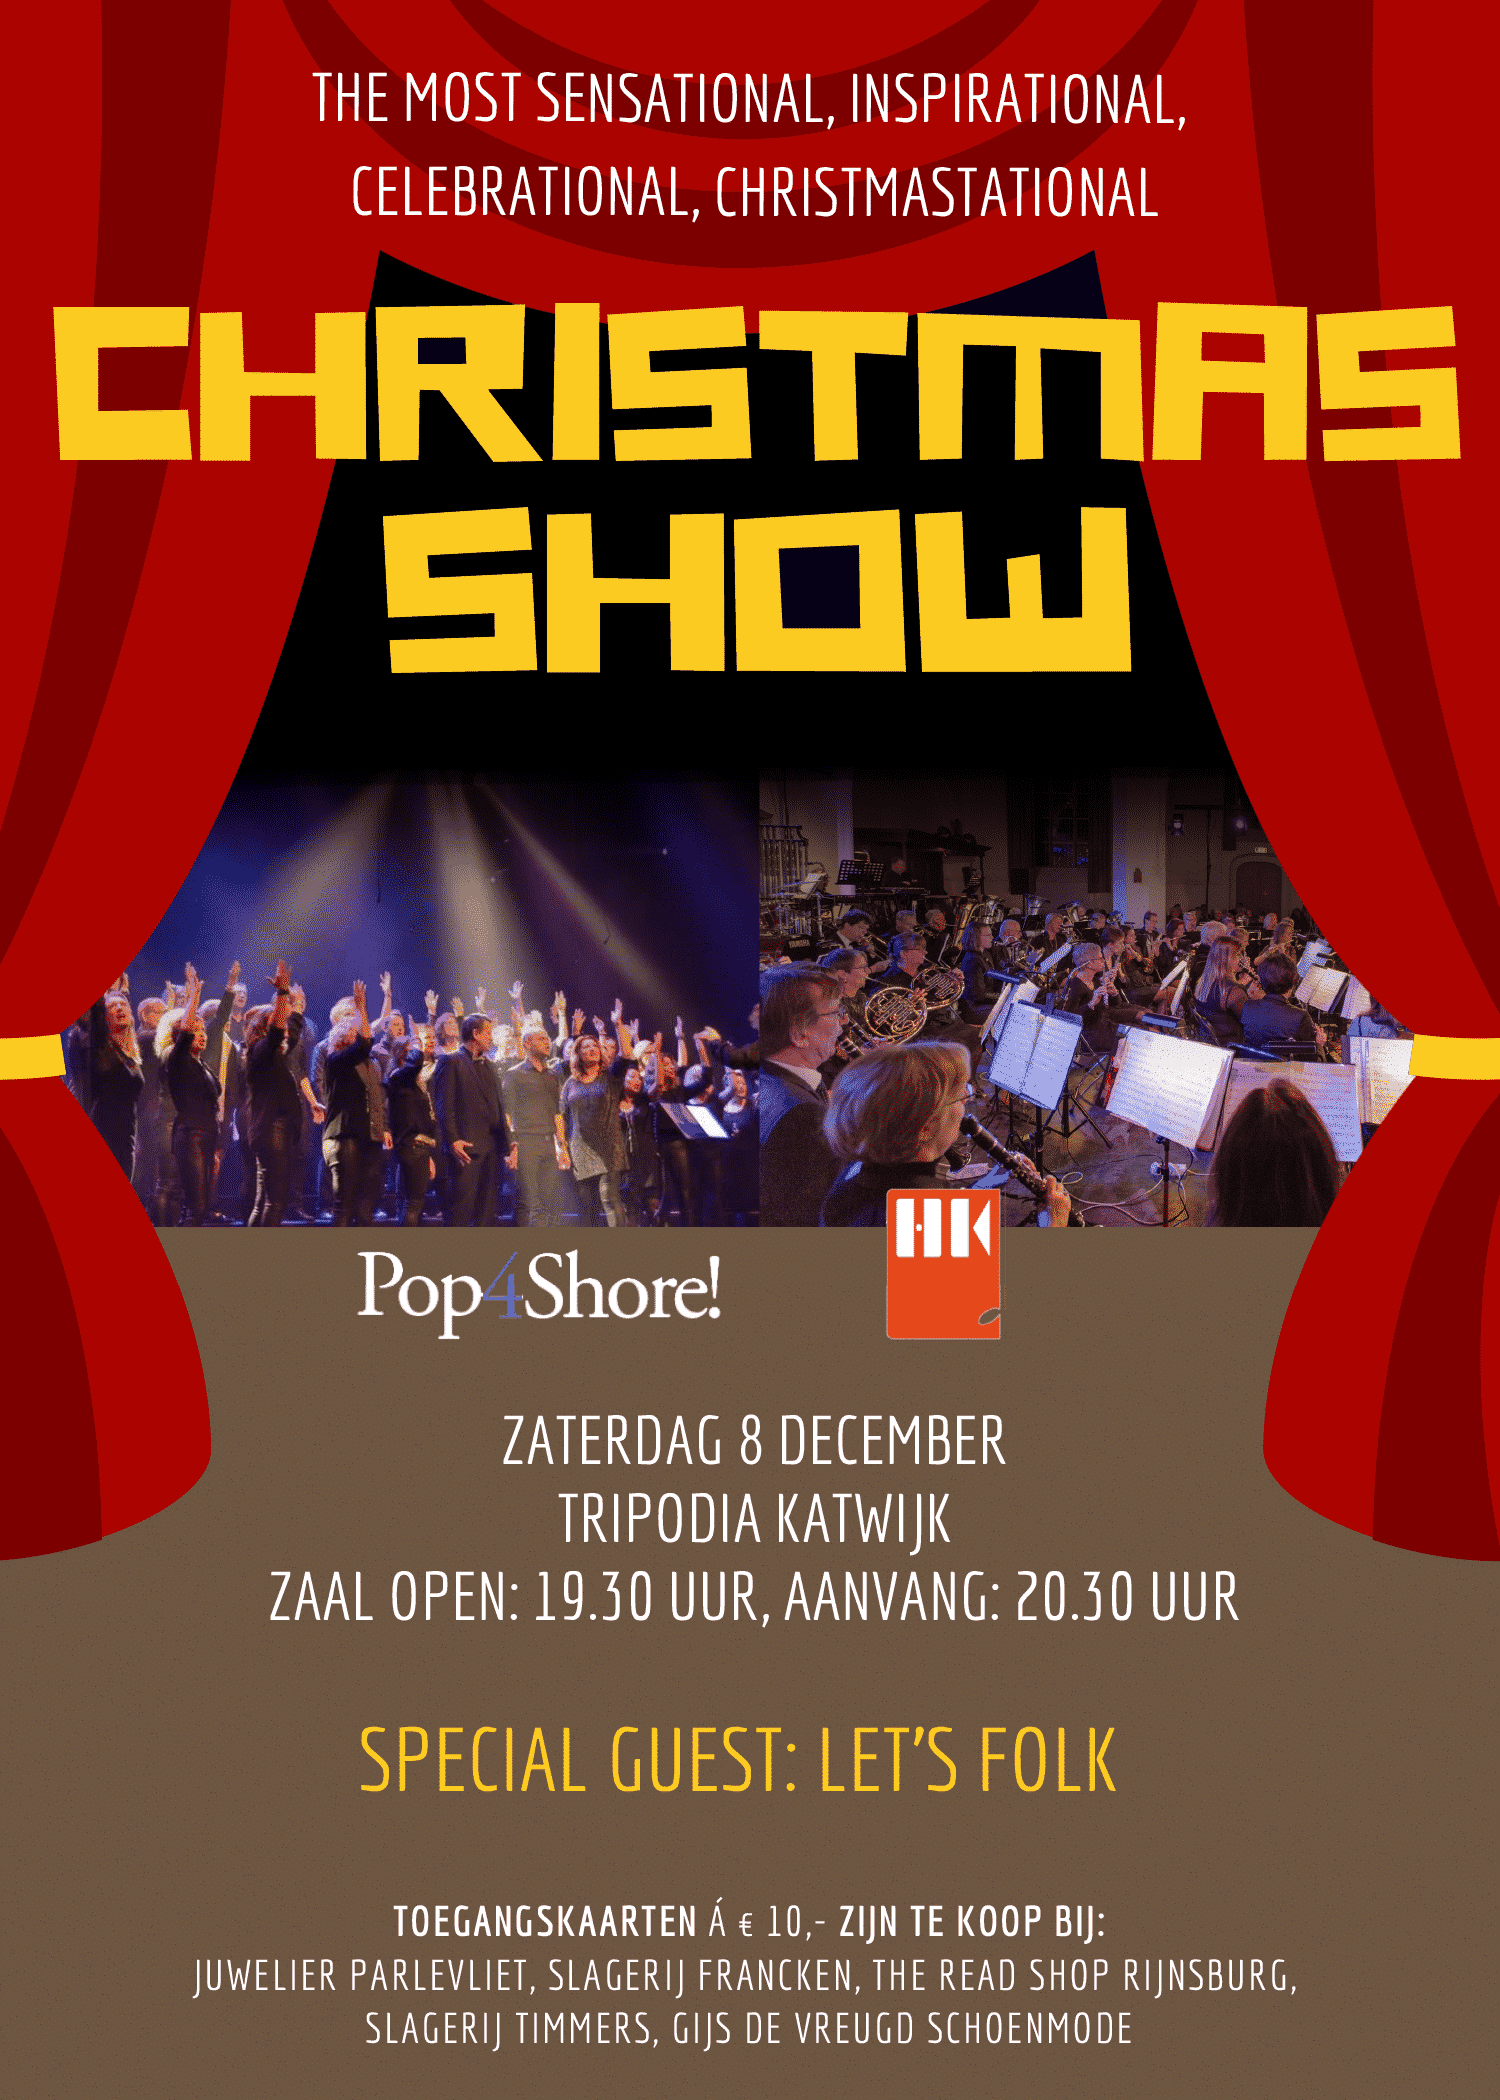 Muzikale kerstshow door Pop4Shore! en Harmonie Katwijk